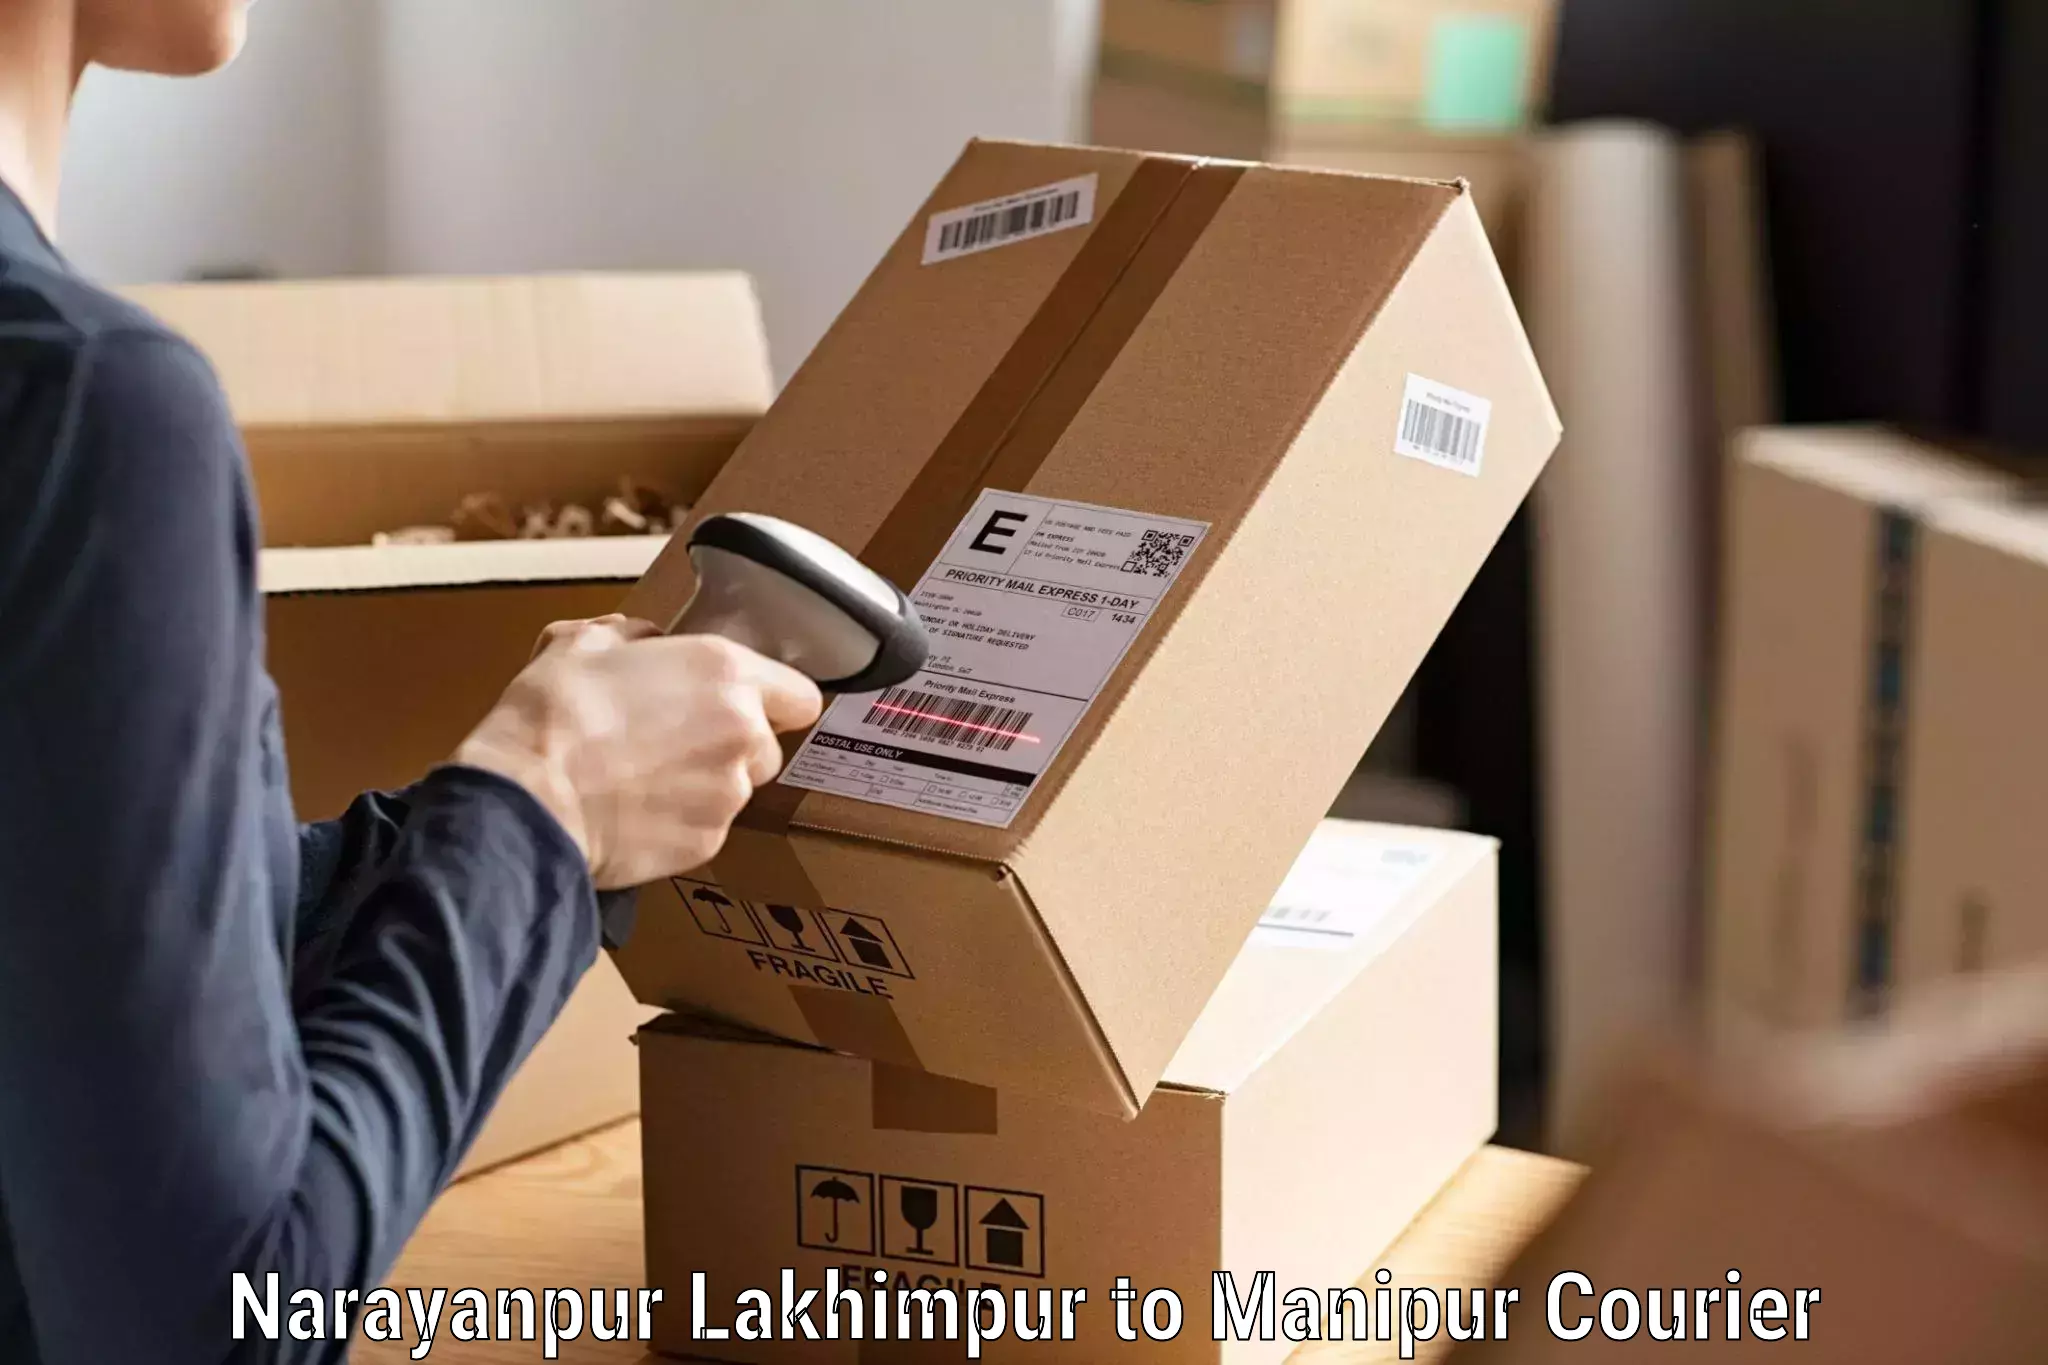 Efficient shipping platforms Narayanpur Lakhimpur to Chandel